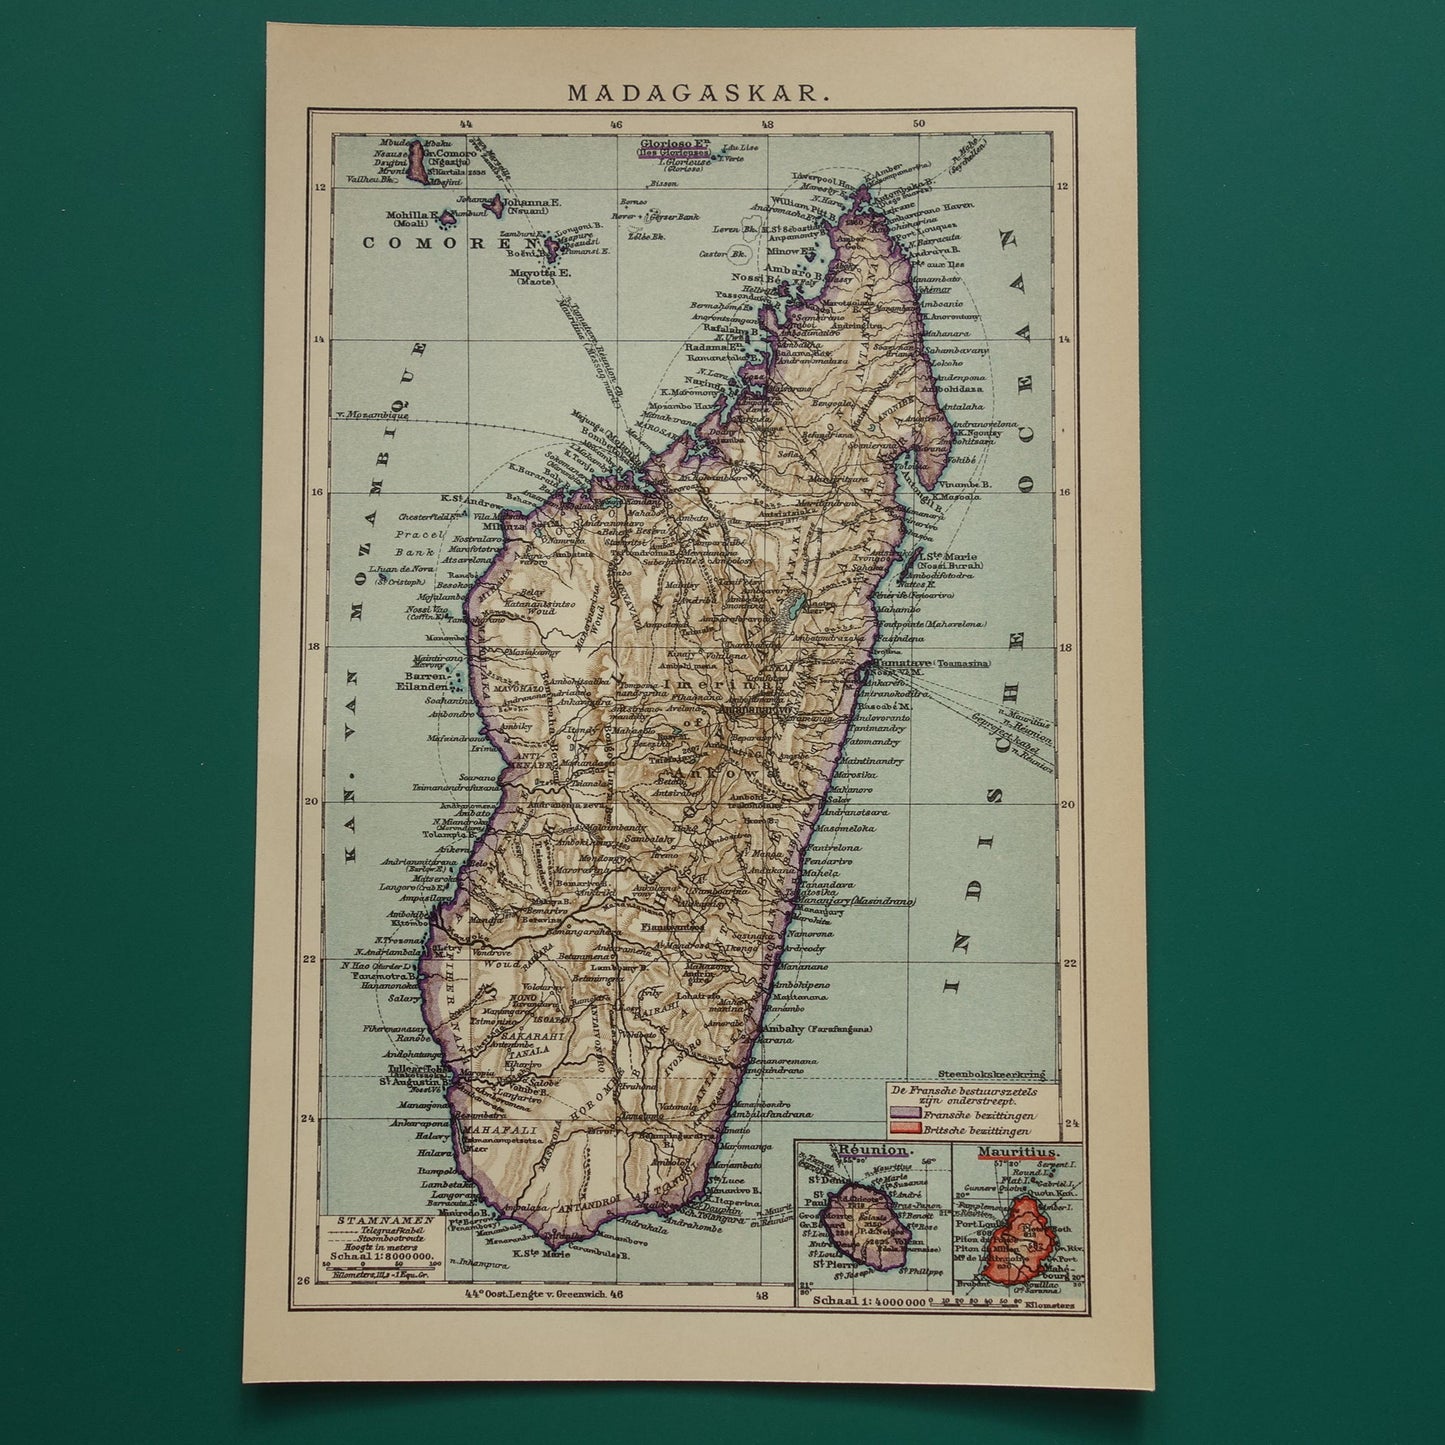 historische Nederlandse kaart van Madagaskar uit het jaar 1909 